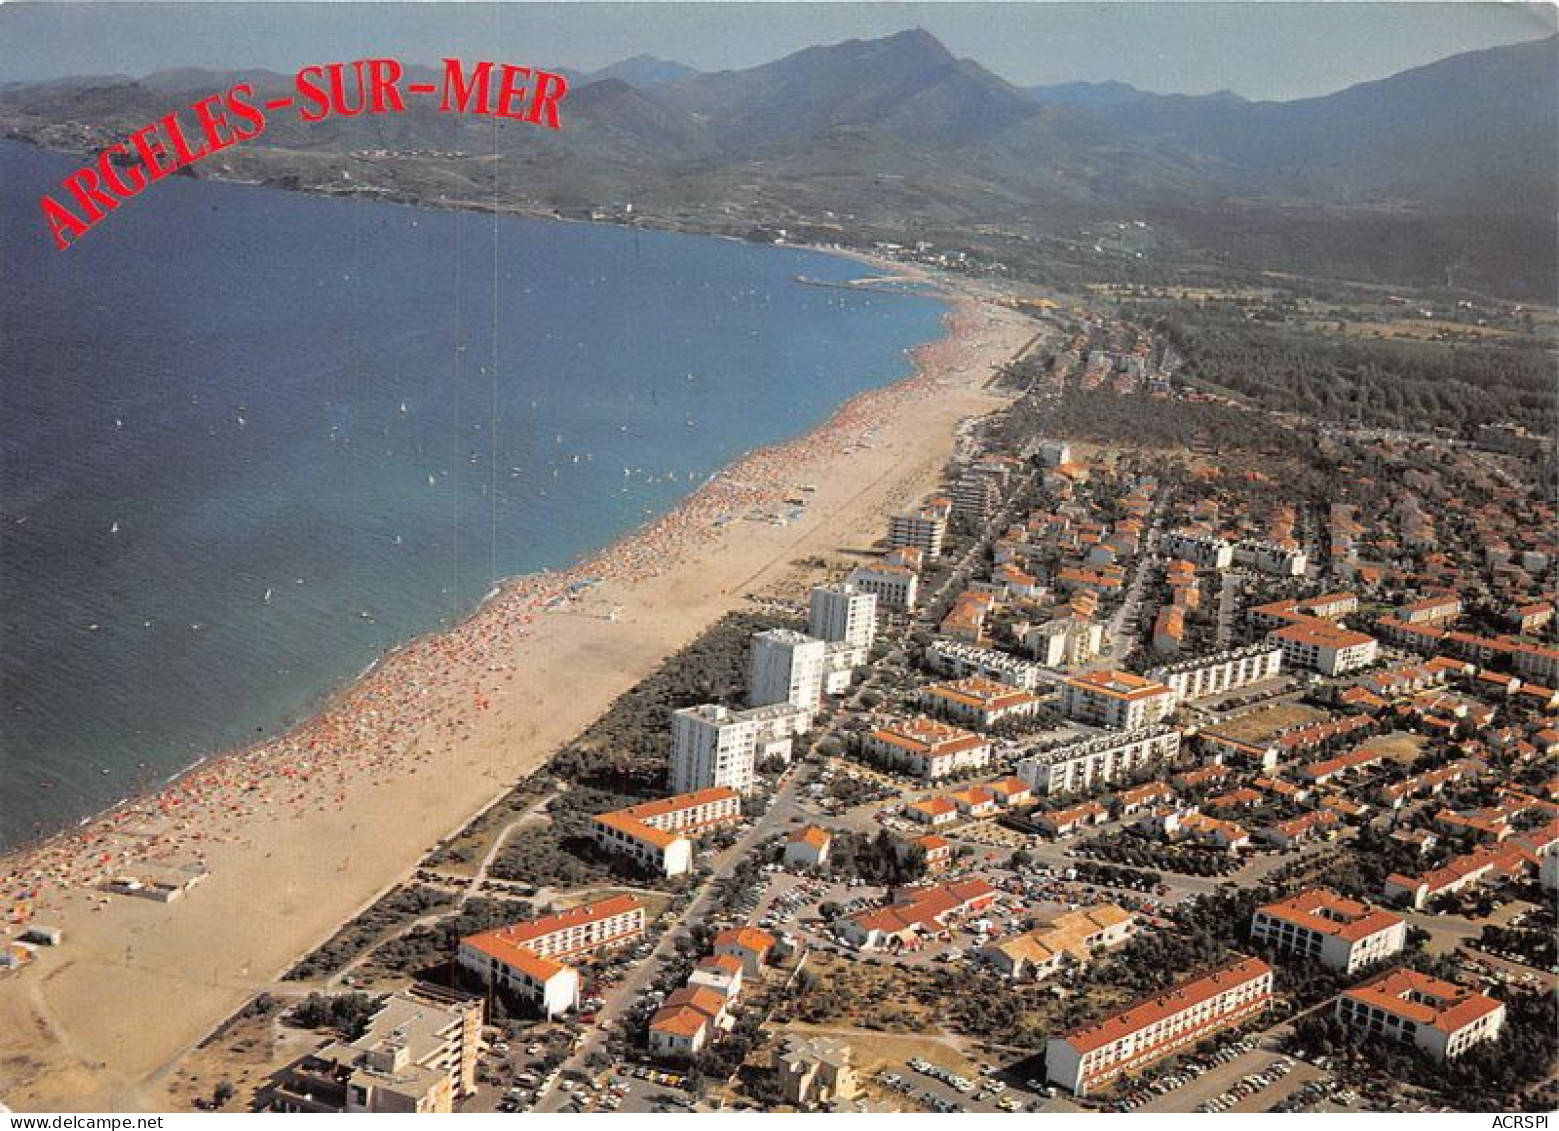 ARGELES SUR MER LE RACOU Vue Generale 28(scan Recto-verso) MA1975 - Argeles Sur Mer